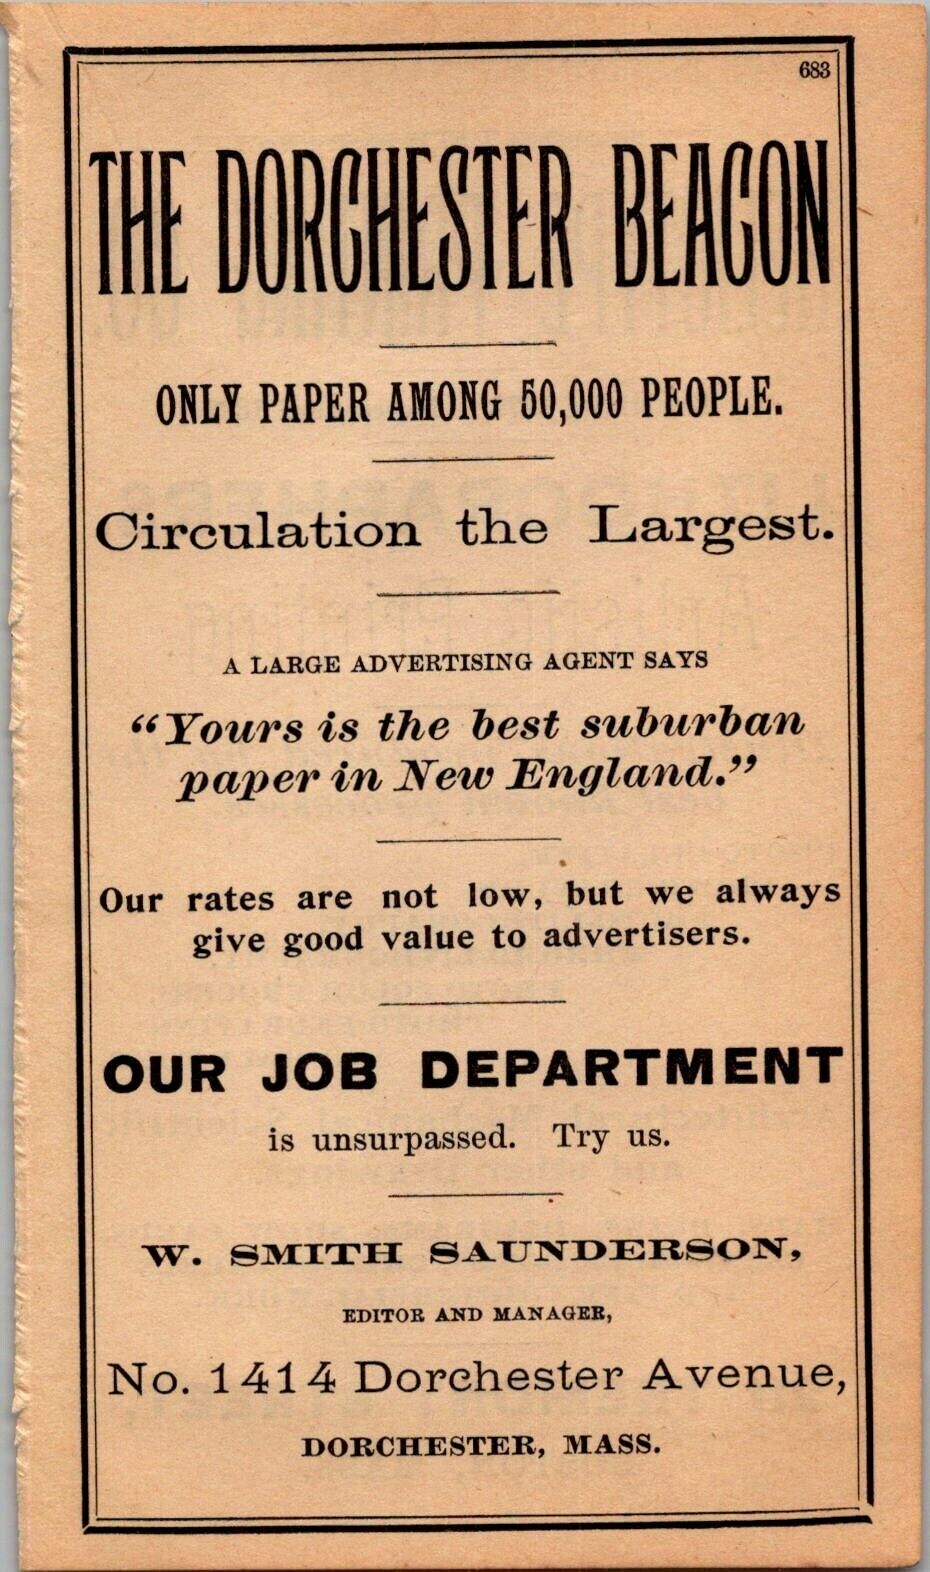 The Dorchester Beacon W. SMITH SAUNDERSON 1894 Boston Almanac Ad